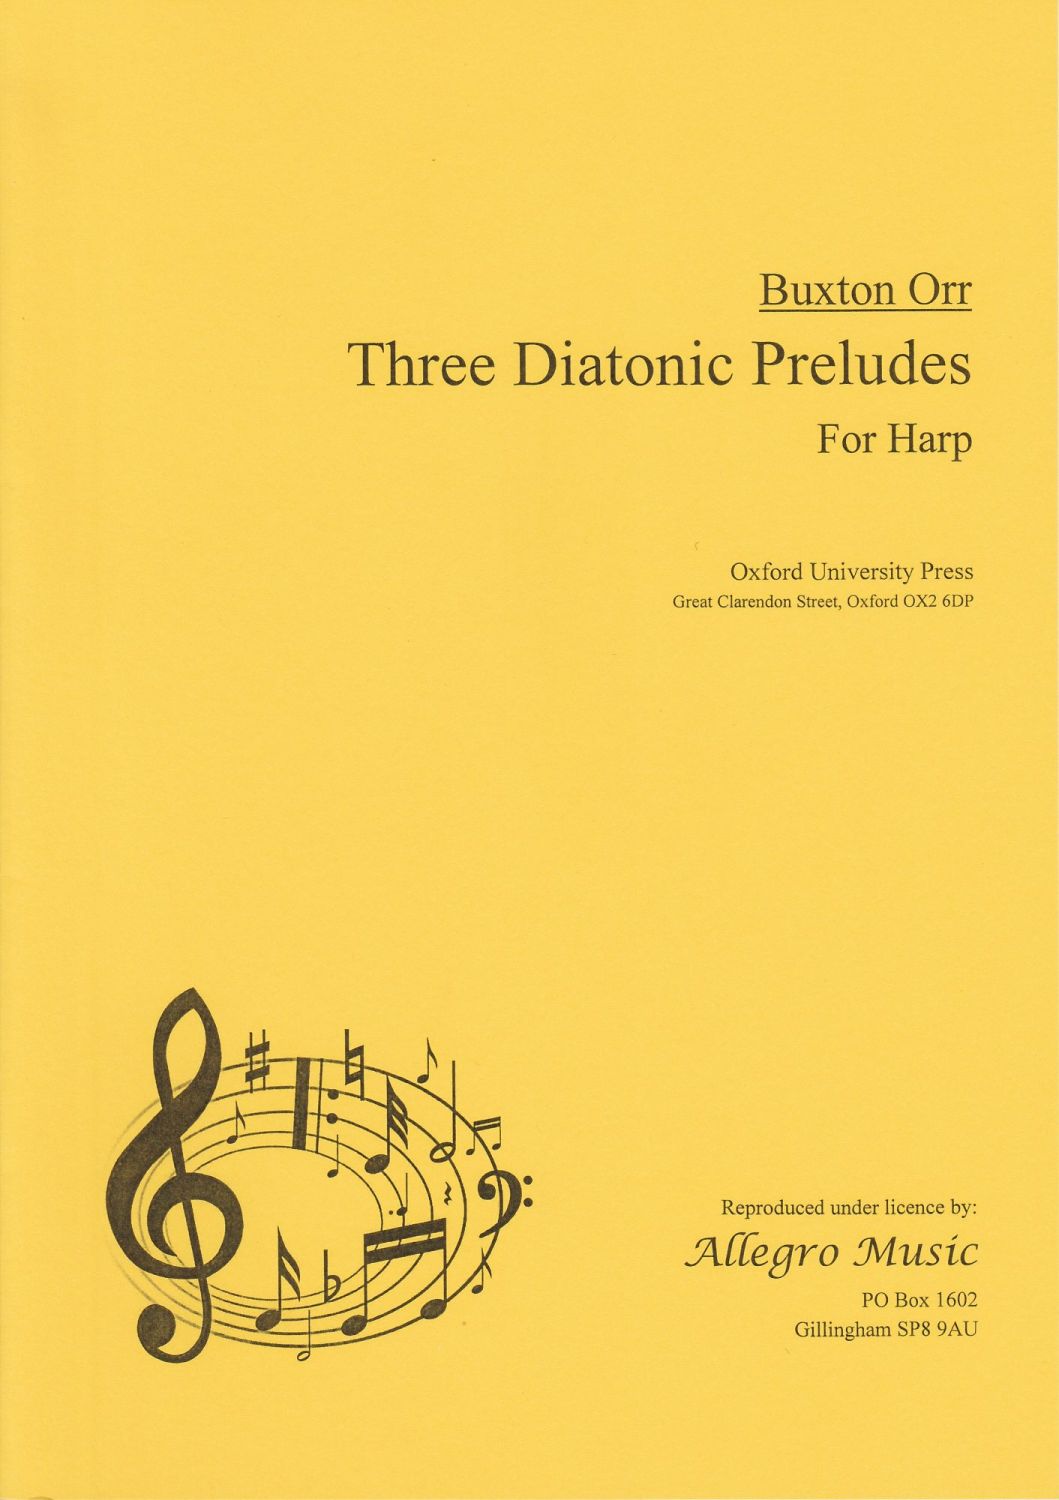 Three Diatonic Preludes for Harp - Buxton Orr